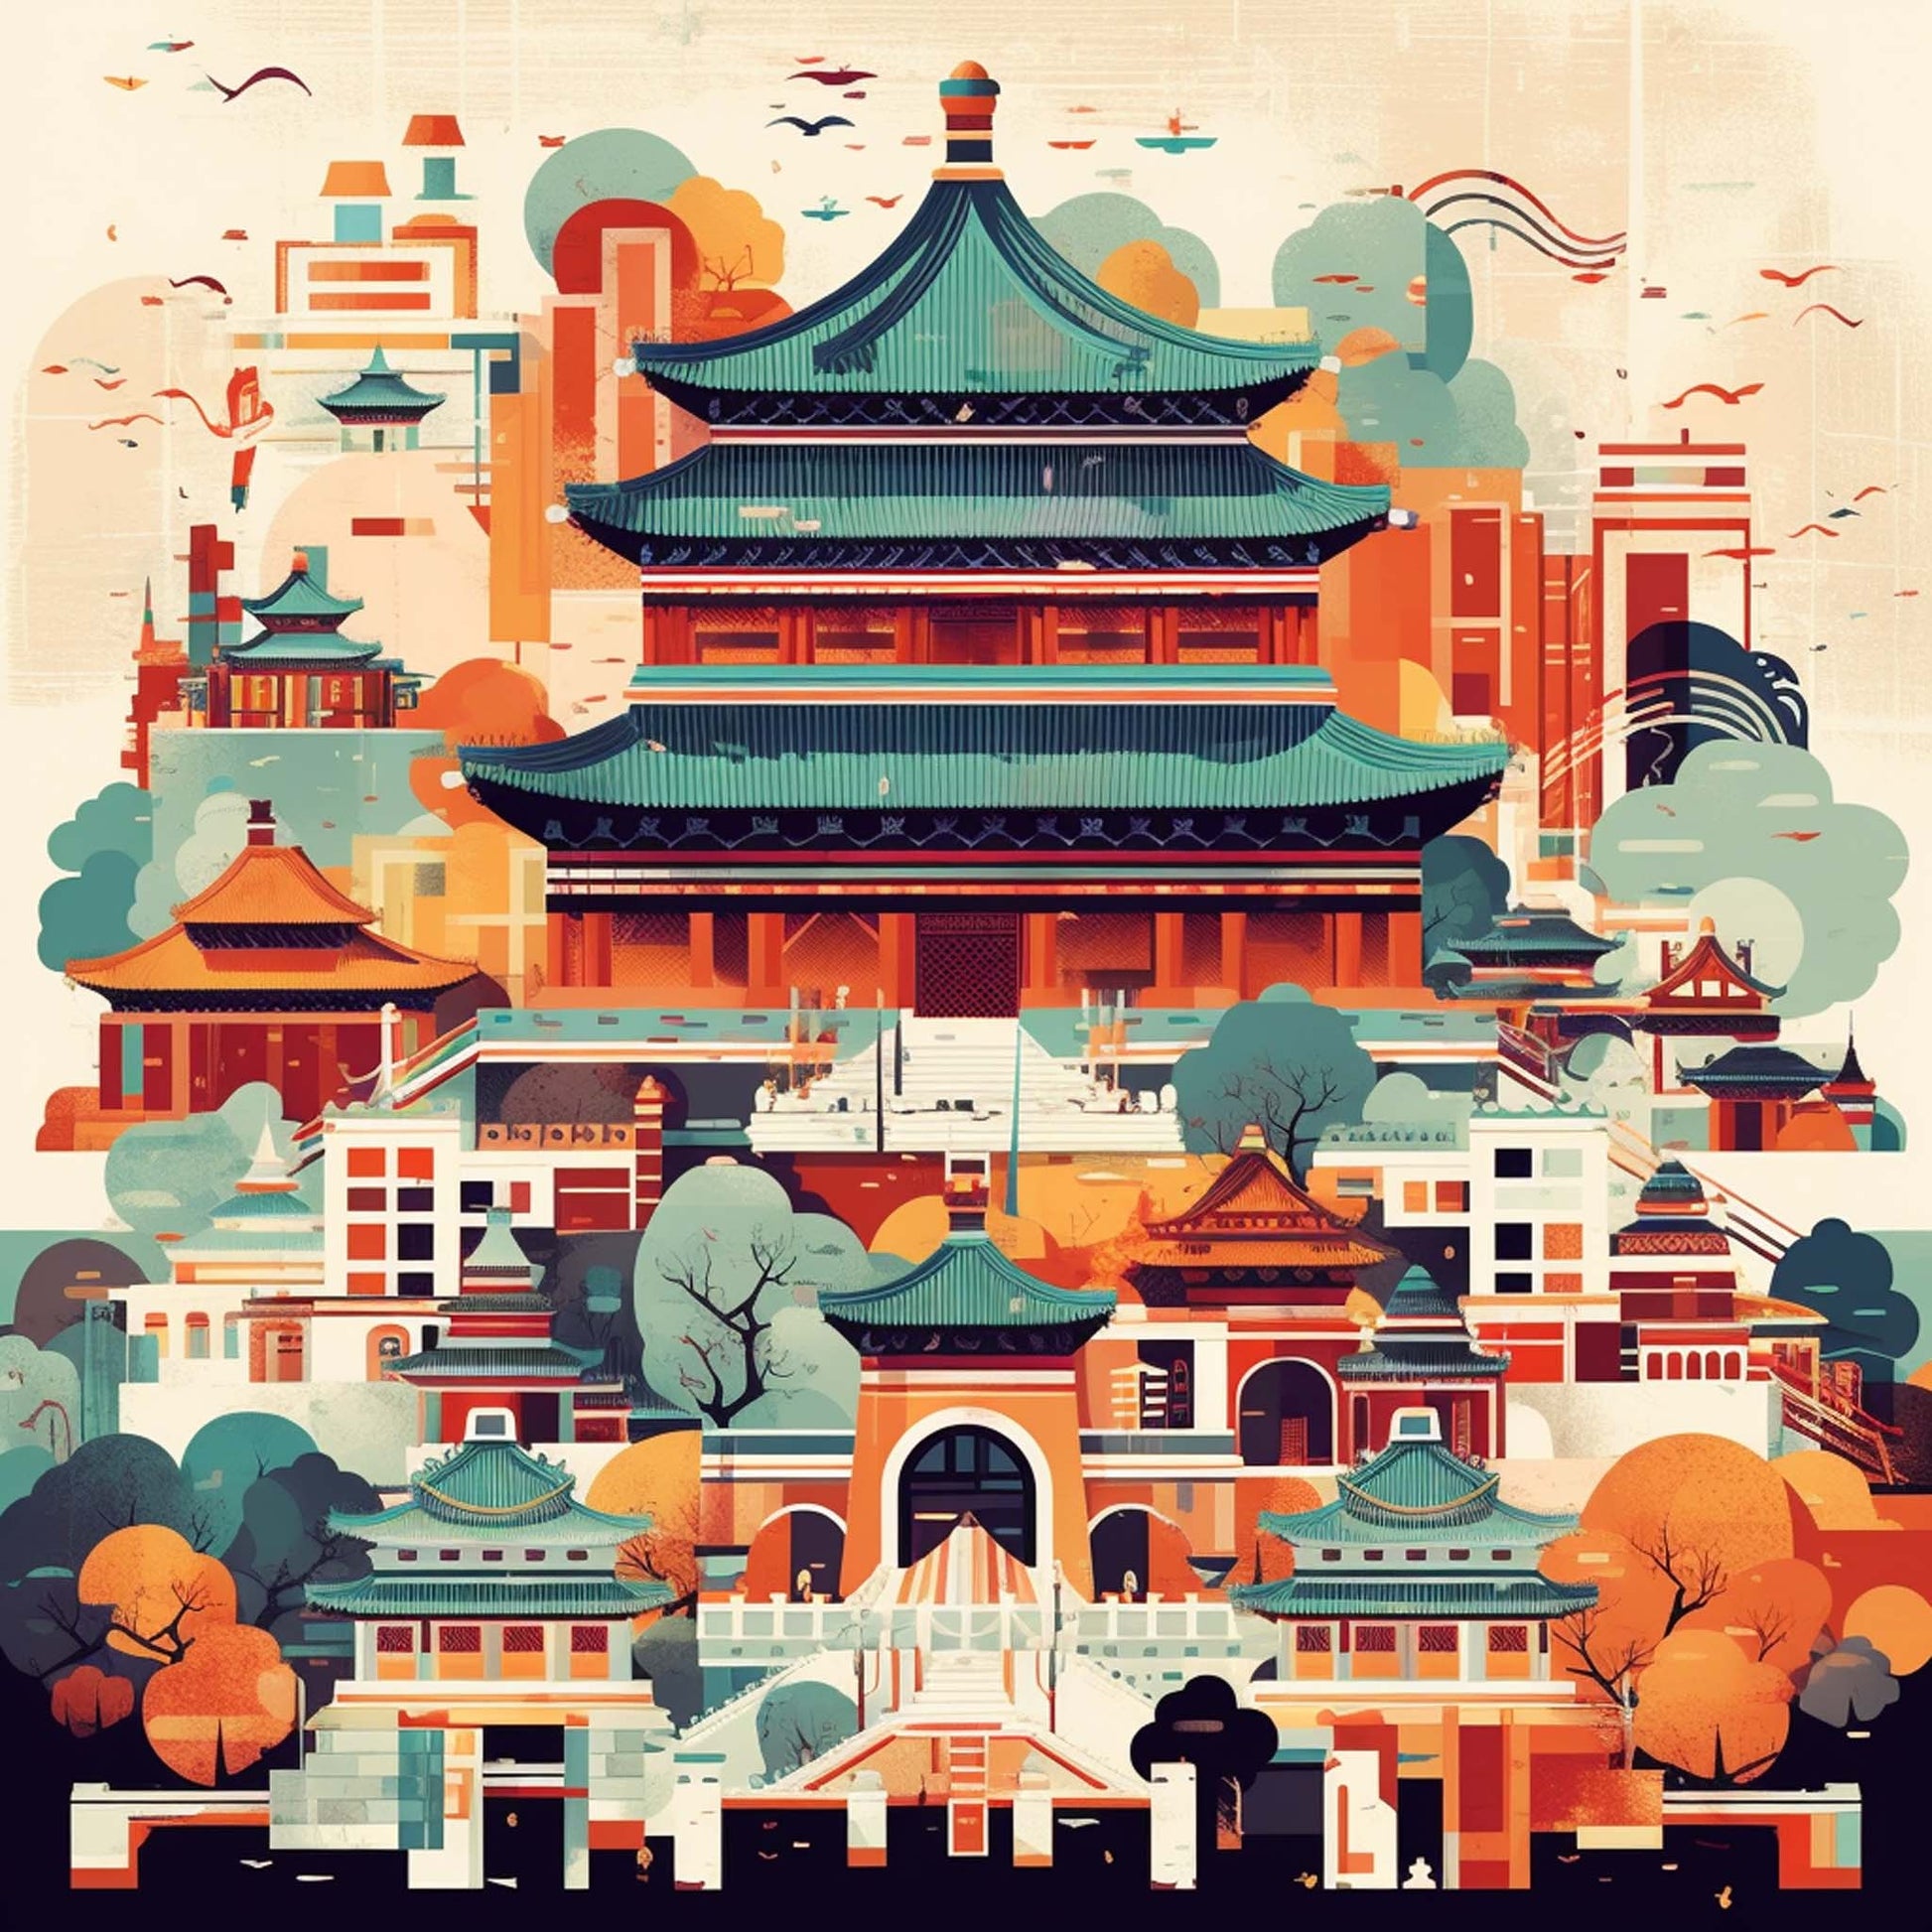 Urbanisto - Peking Verbotene Stadt - Wandbild in der Stilrichtung des Minimalismus